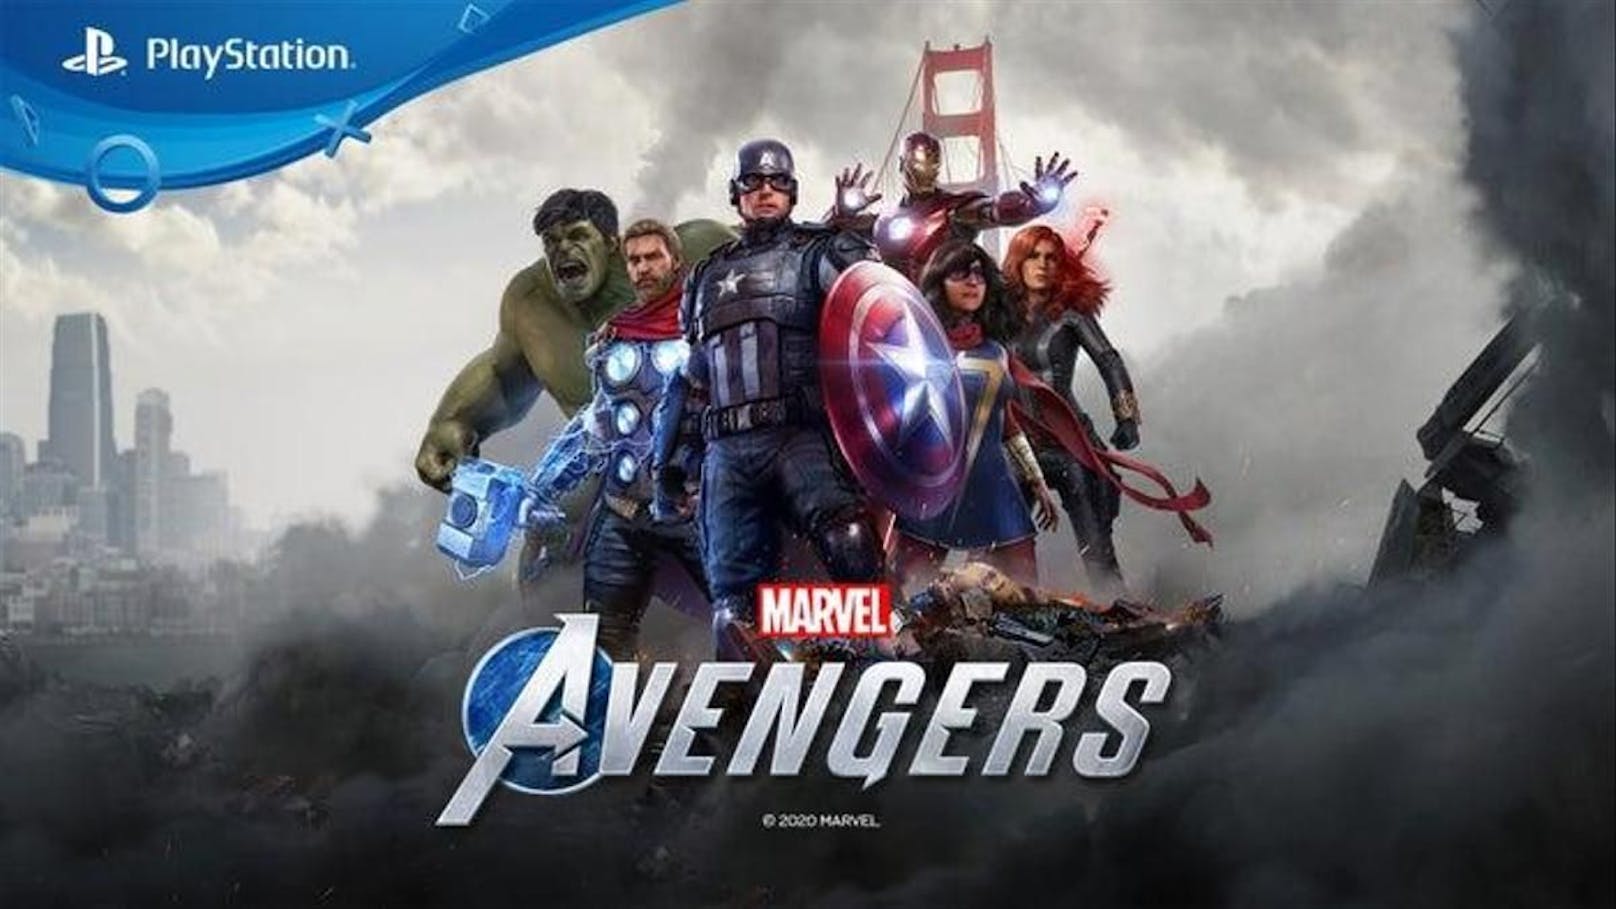 <strong>9. "Marvel's Avengers"&nbsp;</strong><br>Zwar wurden über 3 Millionen Kopien des Games verkauft und "Marvel's Avengers" ist damit unter den bestverkauften Titeln des Jahres. Laut Berichten war das Entwicklungsbudget von über 100 Millionen Dollar allerdings so groß, dass das Spiel dem Studio trotz der hohen Verkaufszahlen einen Verlust von 63 Millionen Dollar bescherte.